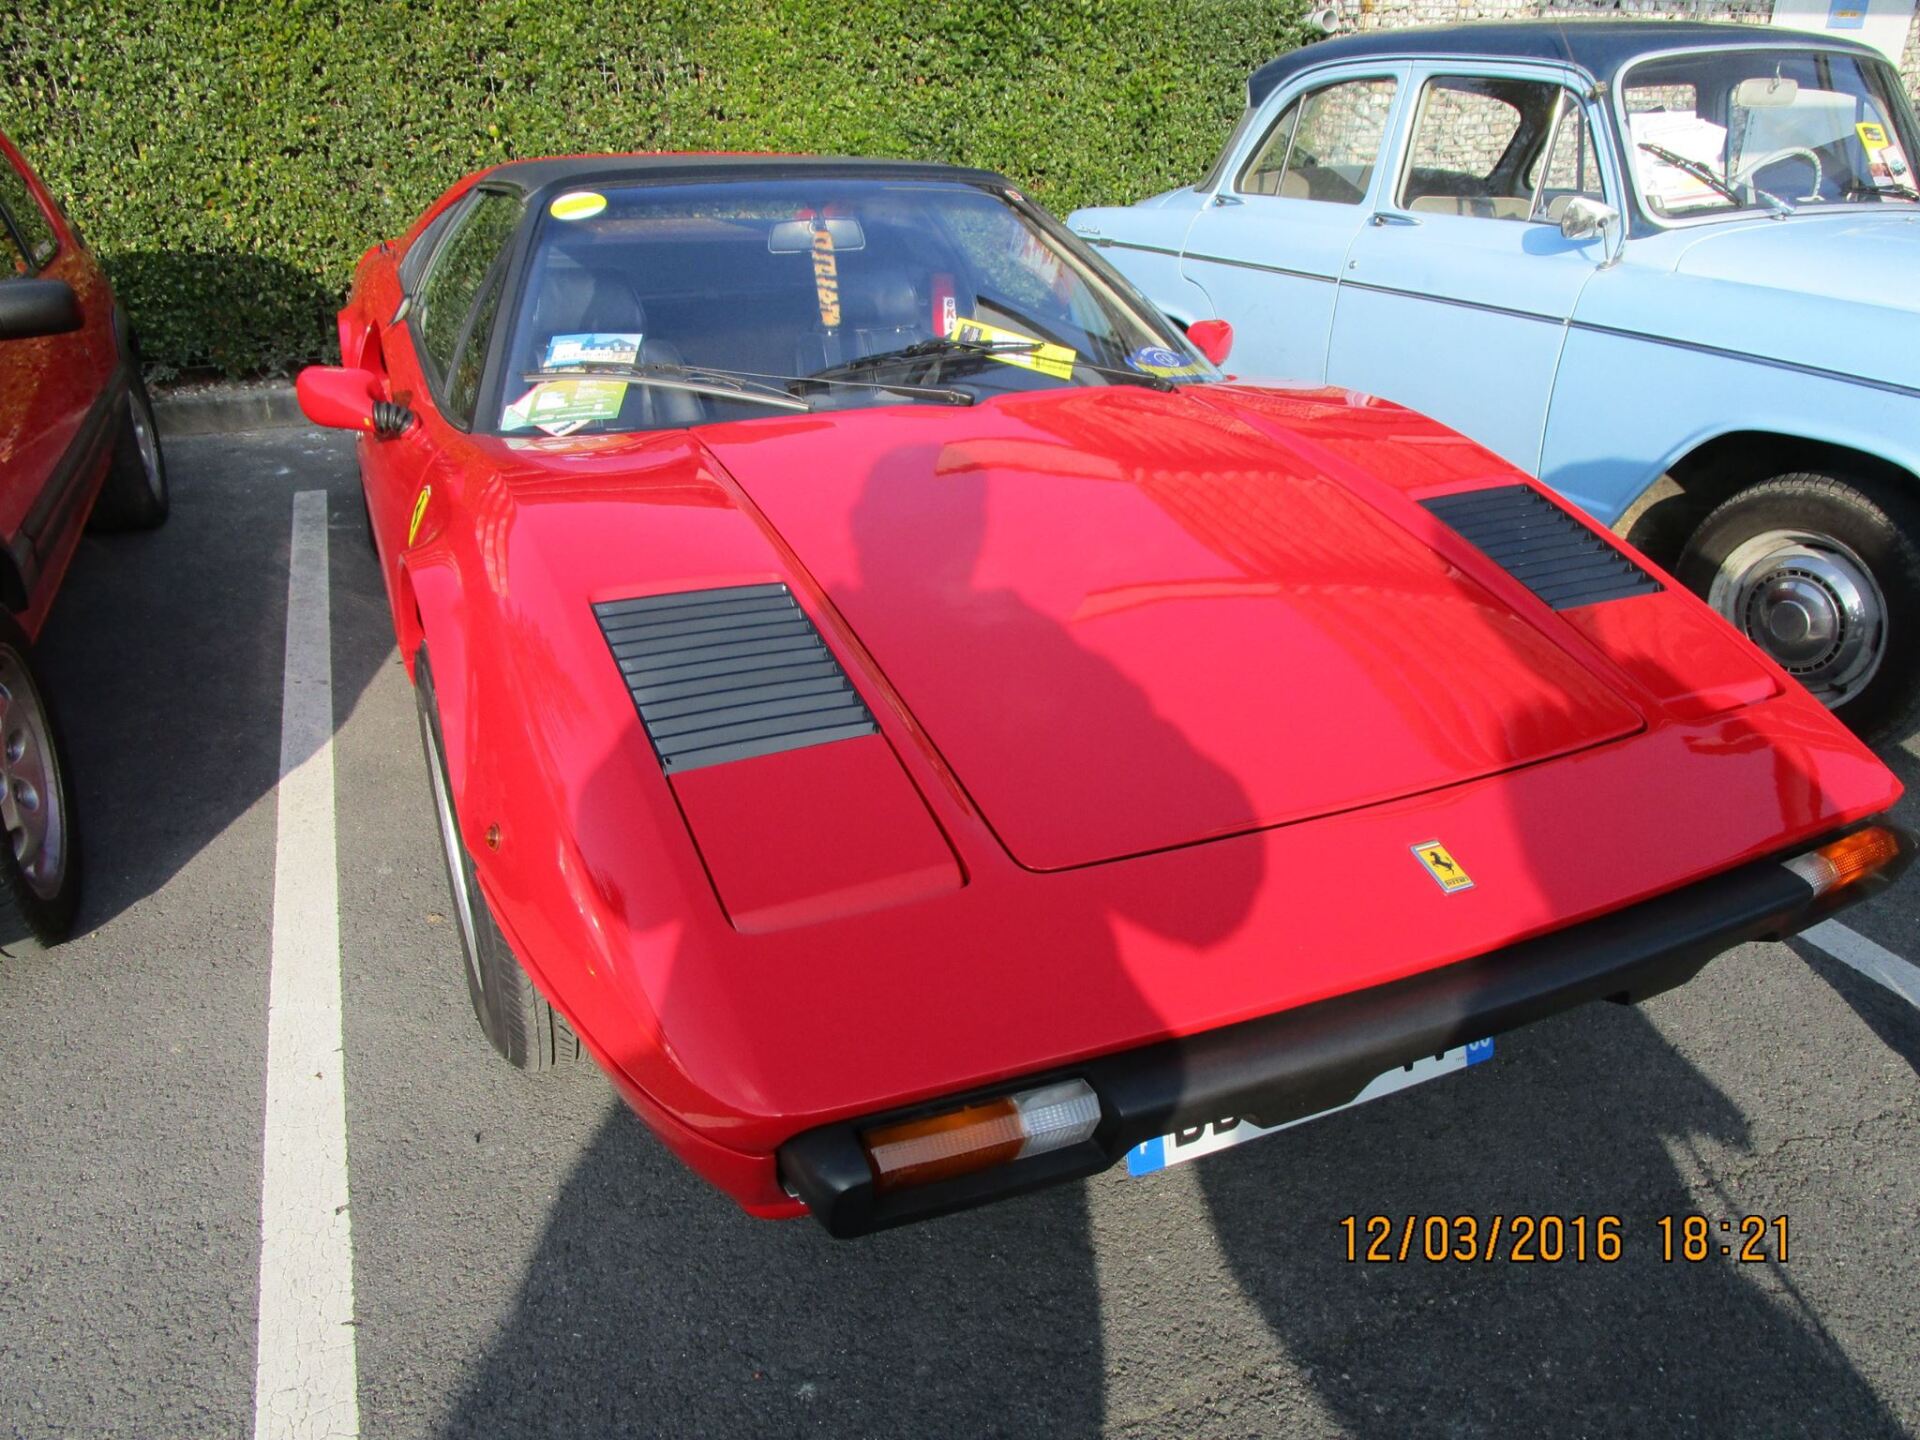 Ferrari rouge sur un parking